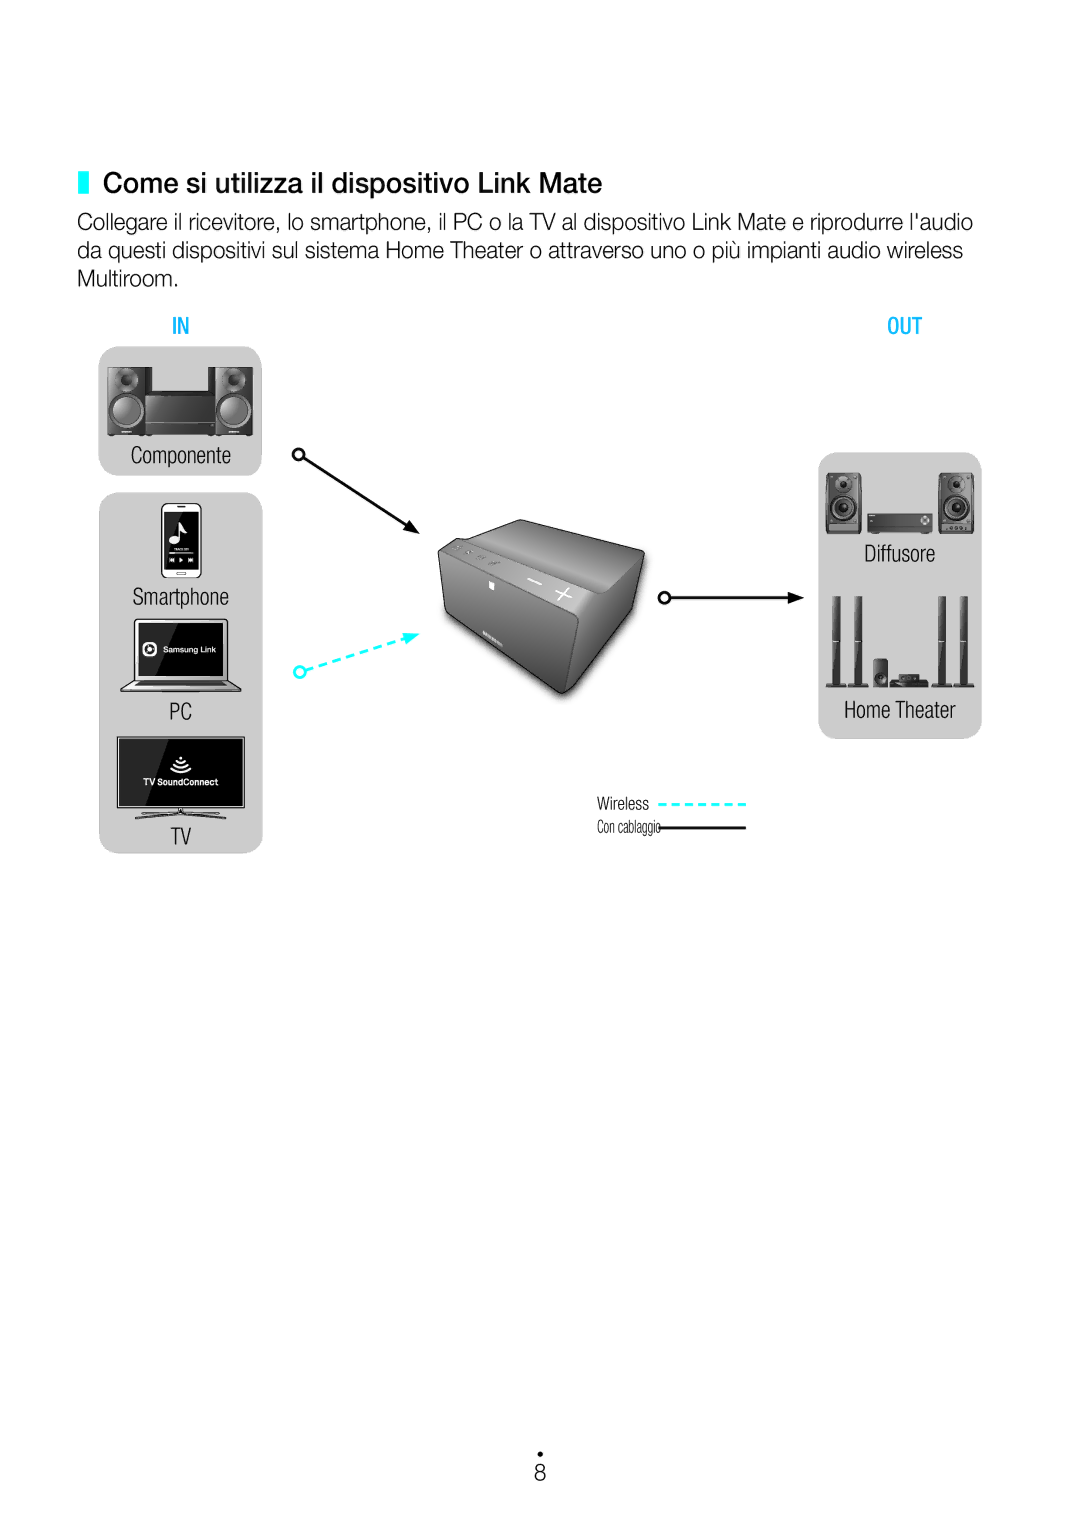 Samsung WAM270/ZF manual Come si utilizza il dispositivo Link Mate, Multiroom, Smartphone Diffusore Home Theater 